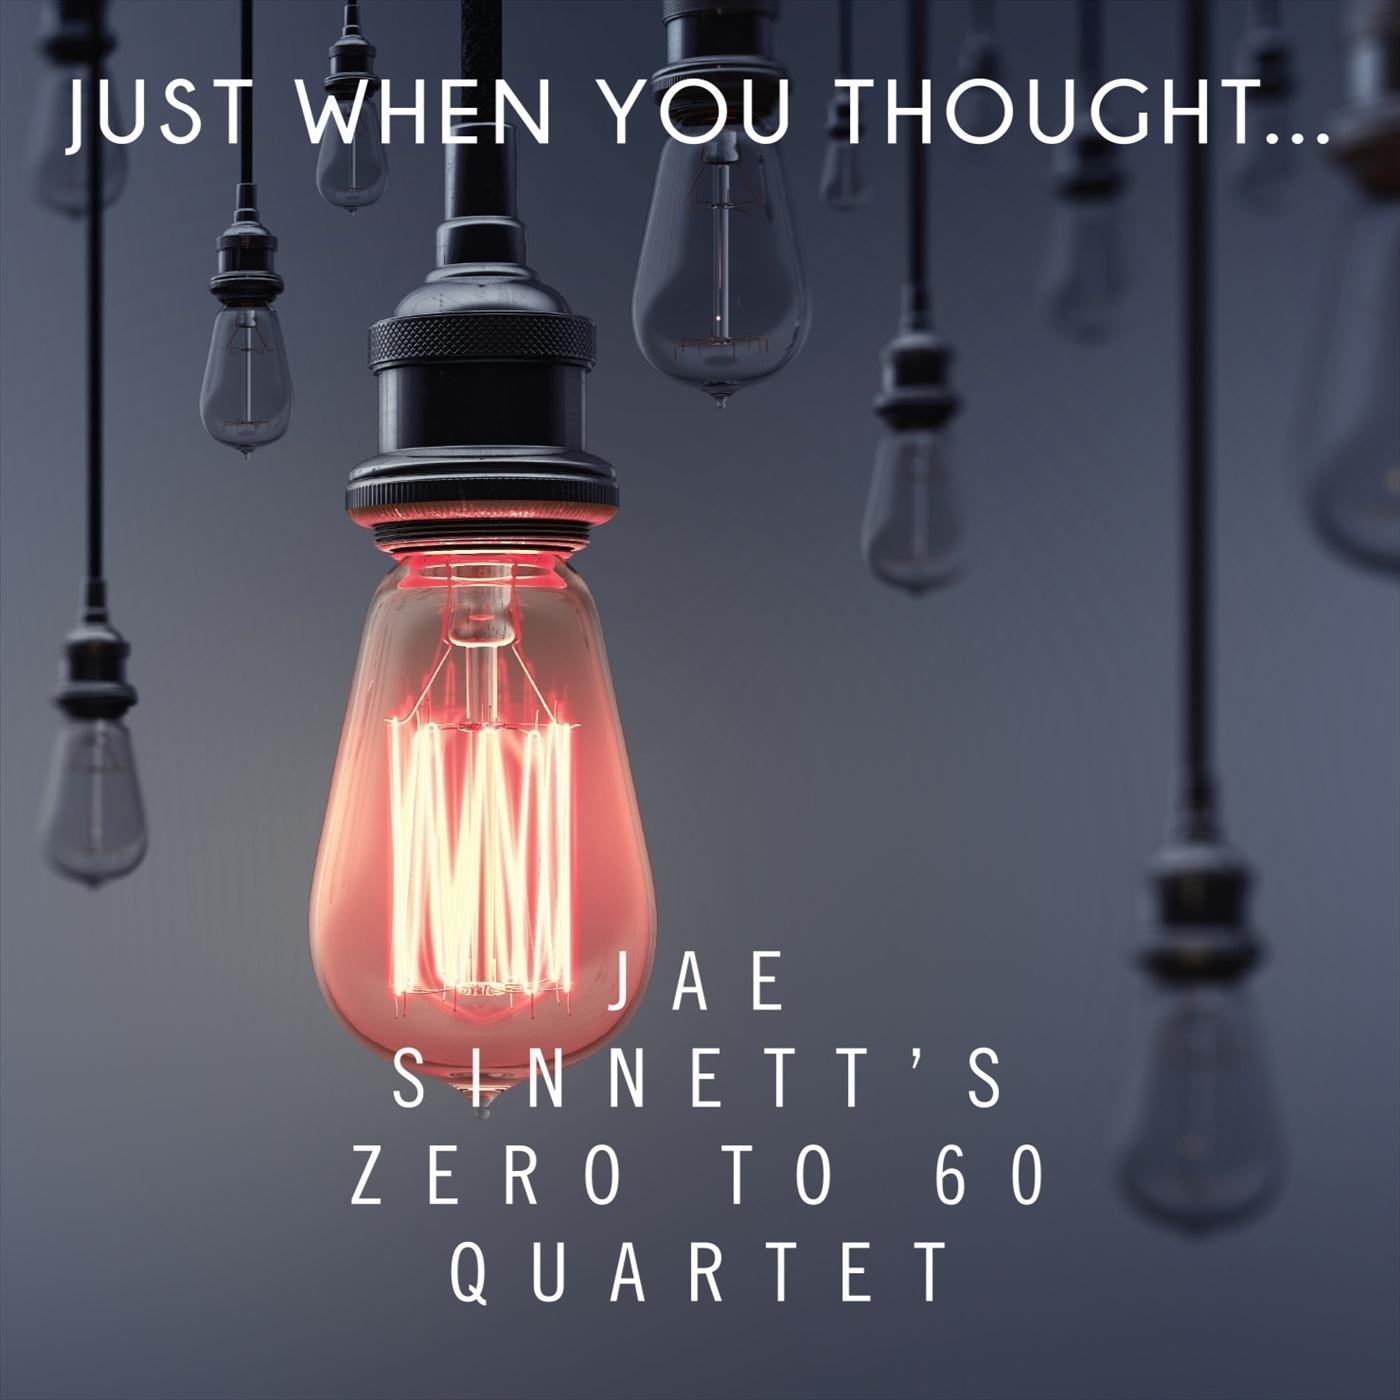 JAE SINNETT - Jae Sinnett's Zero to 60 Quartet : Just When You Thought cover 